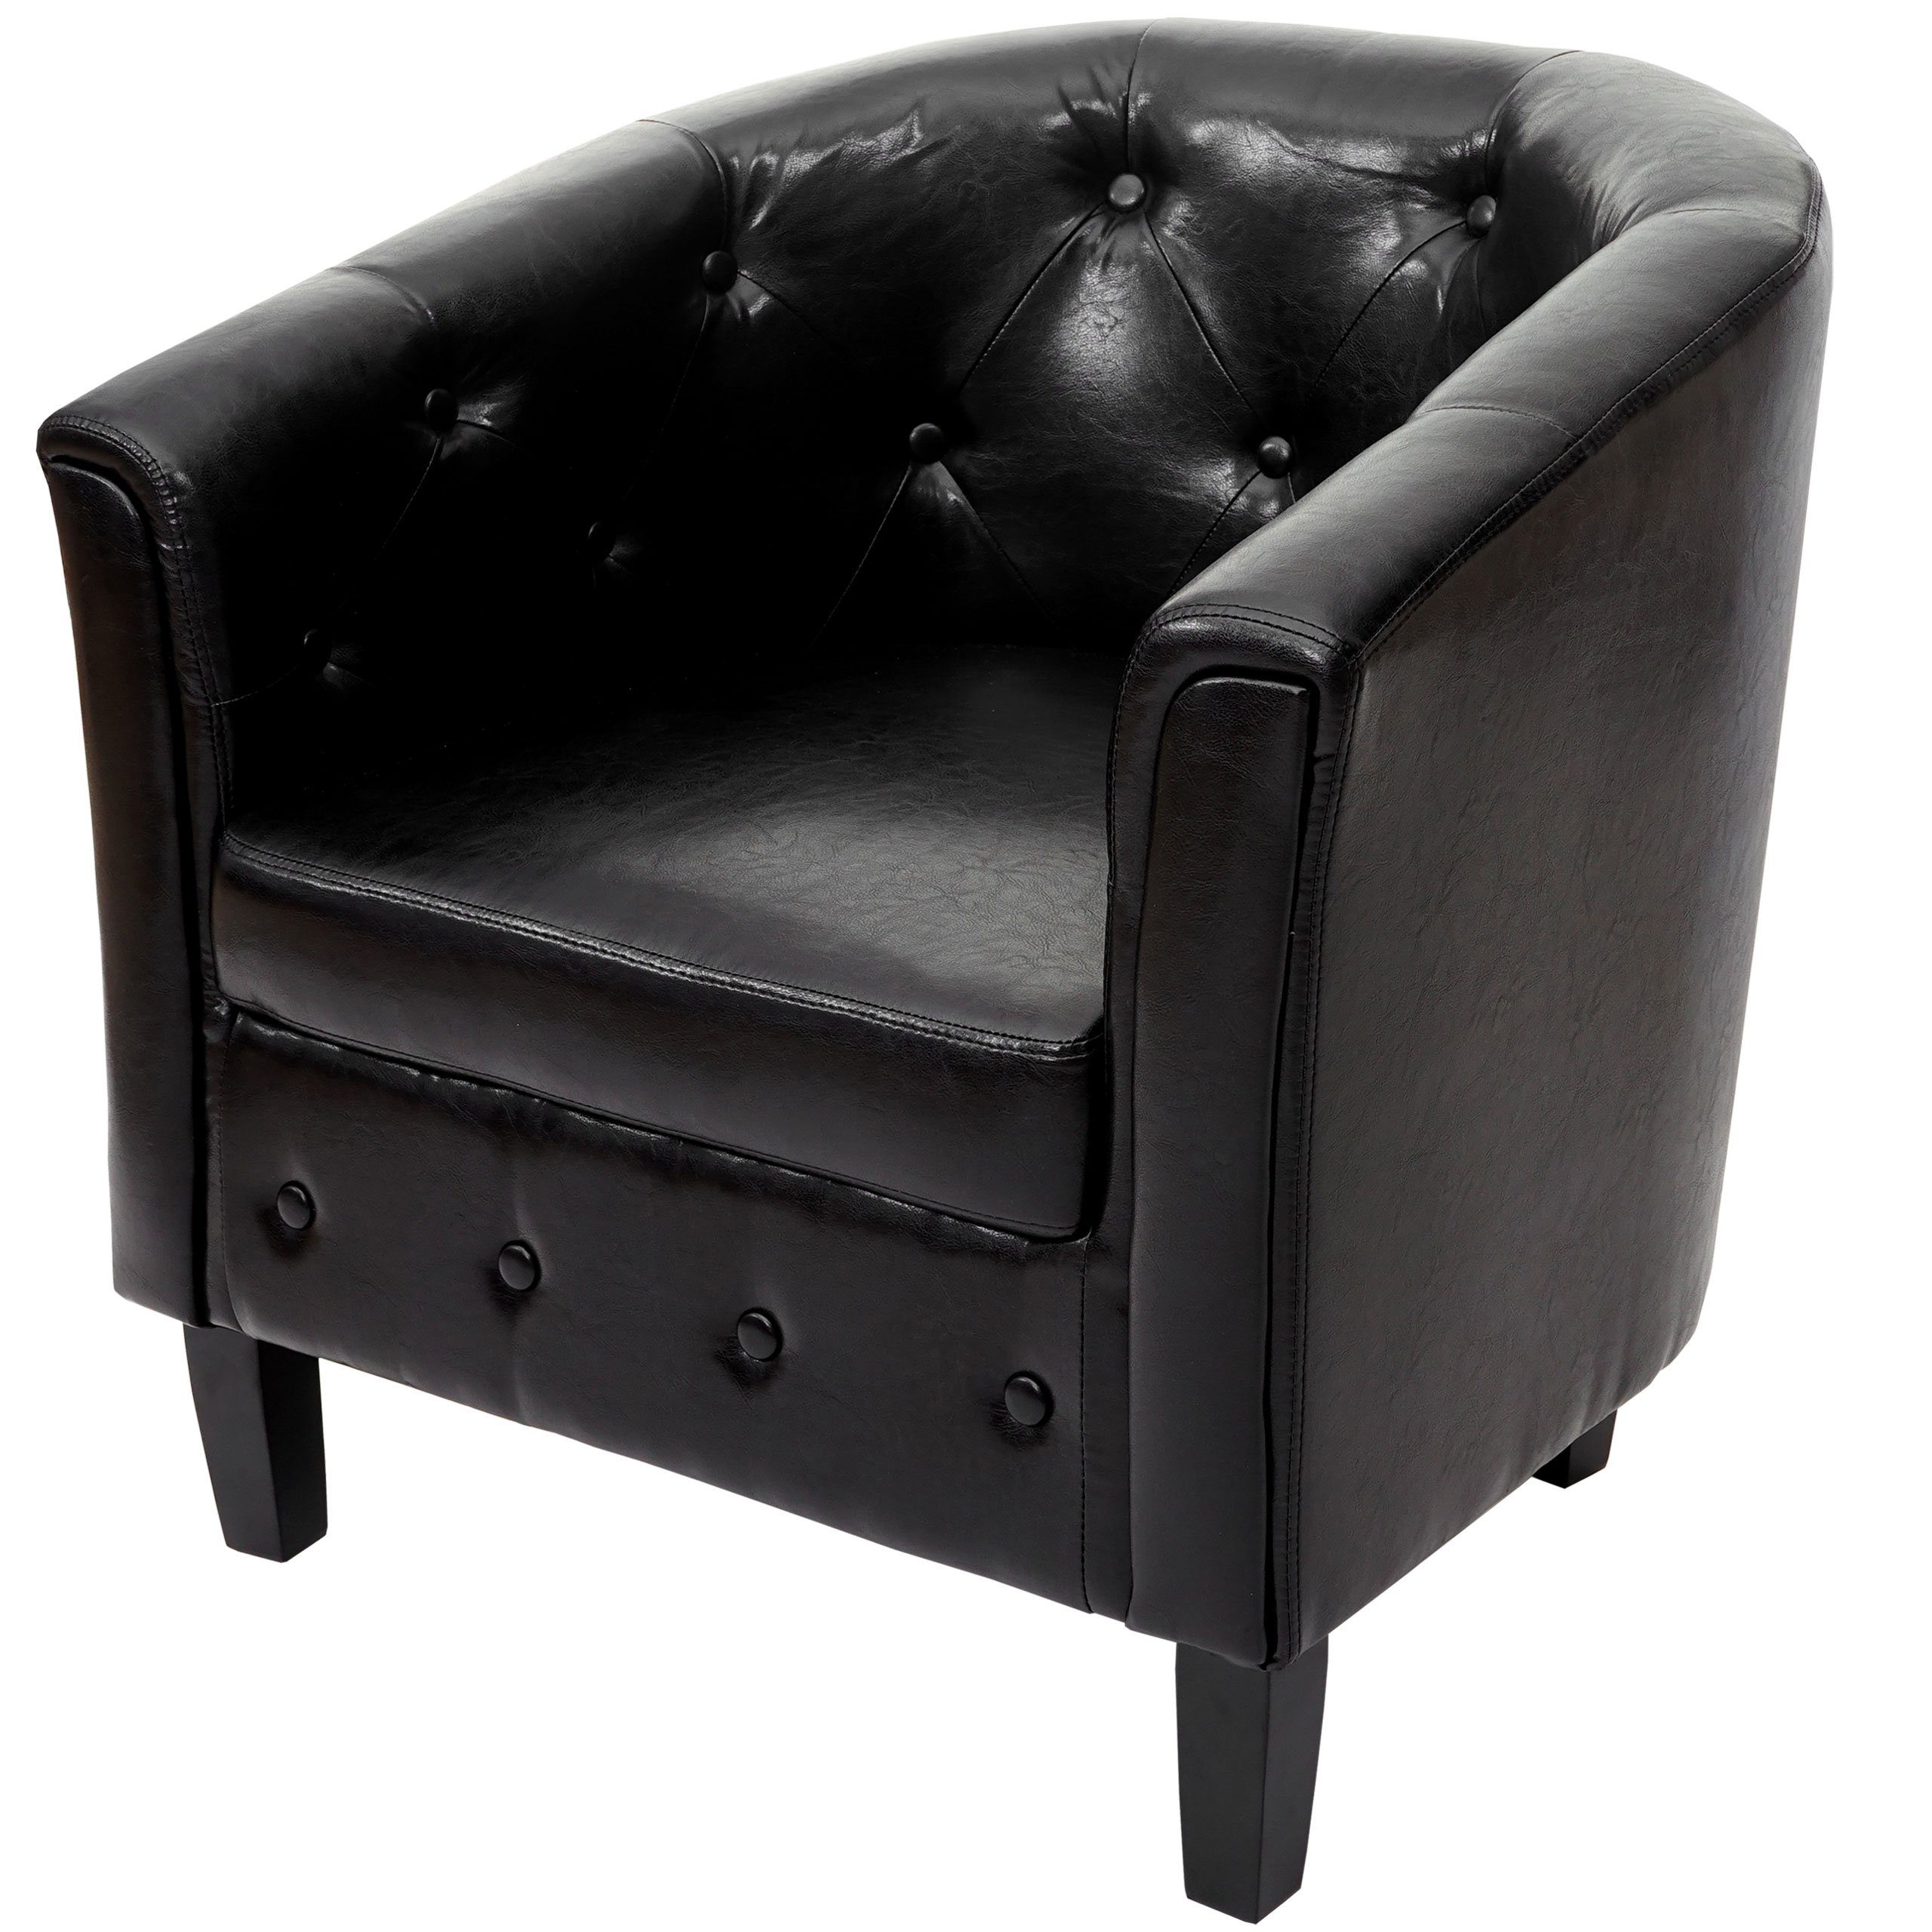 MCW Sessel T810, Bequemer Sitzkomfort, Aufwendige Knöpfung im Chesterfield-Look schwarz